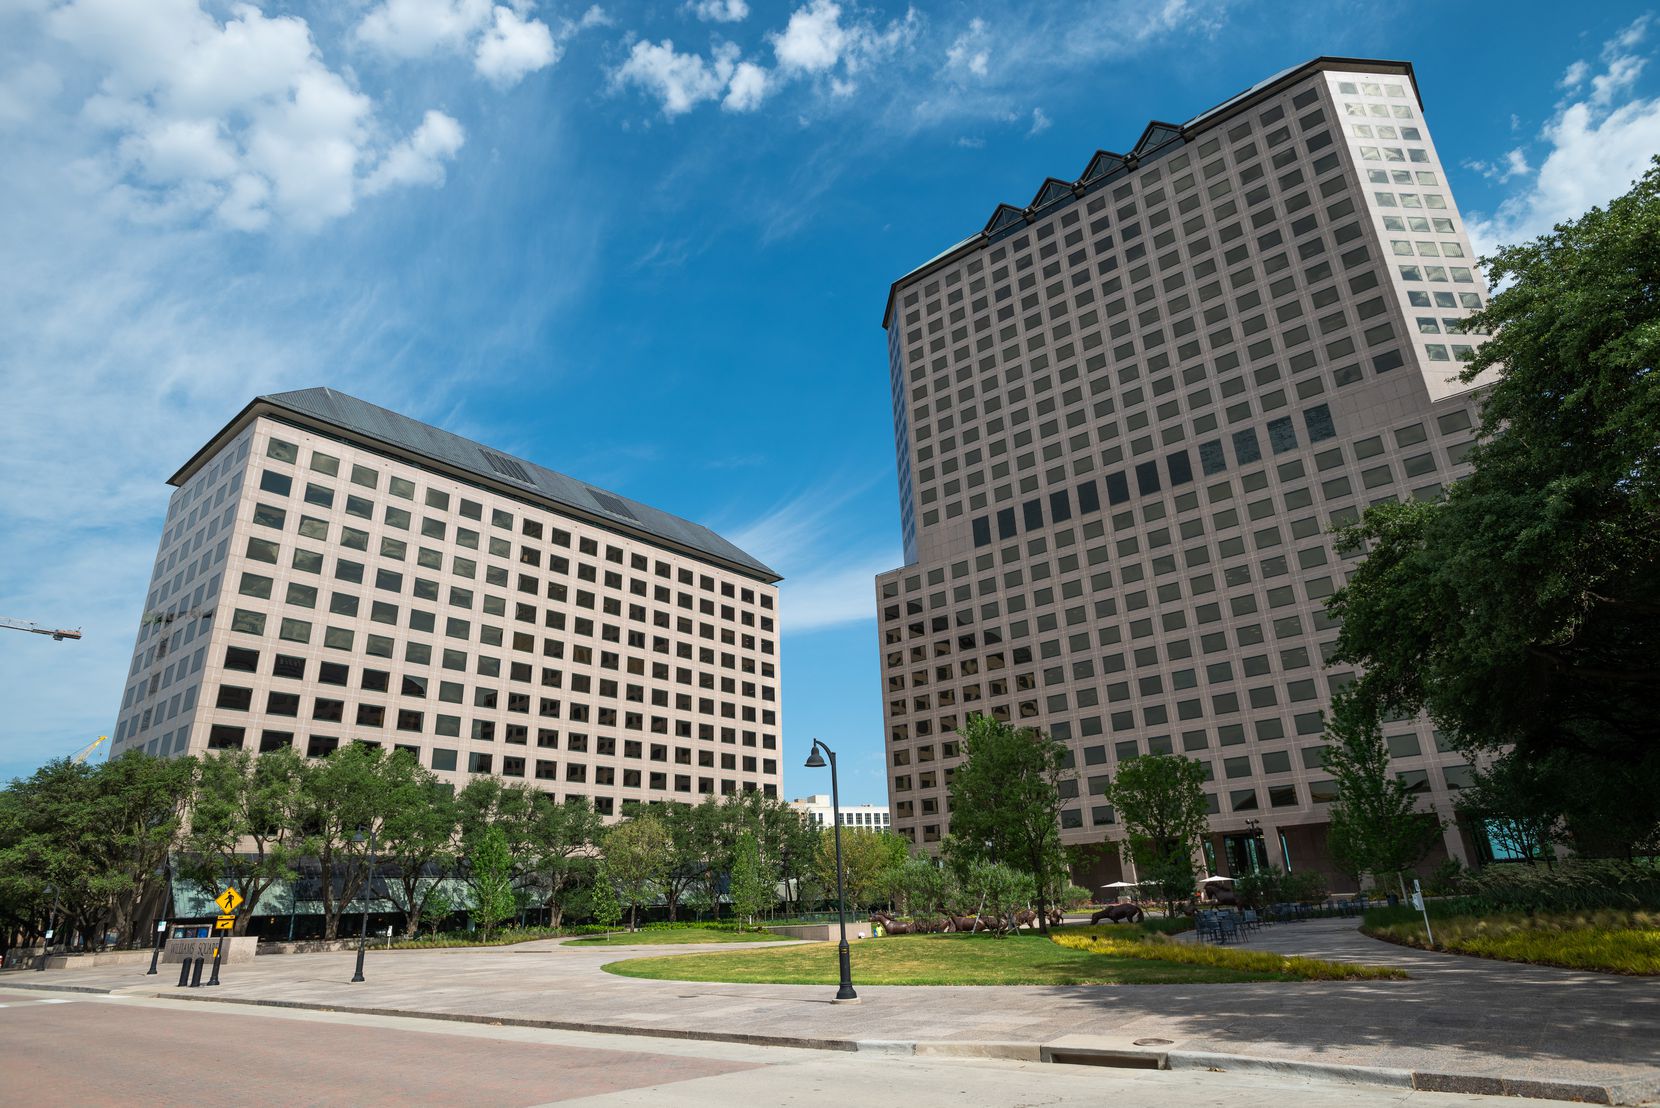 Die Büros der Caterpillar Corporation (links) befinden sich am Williams Square in Irving.